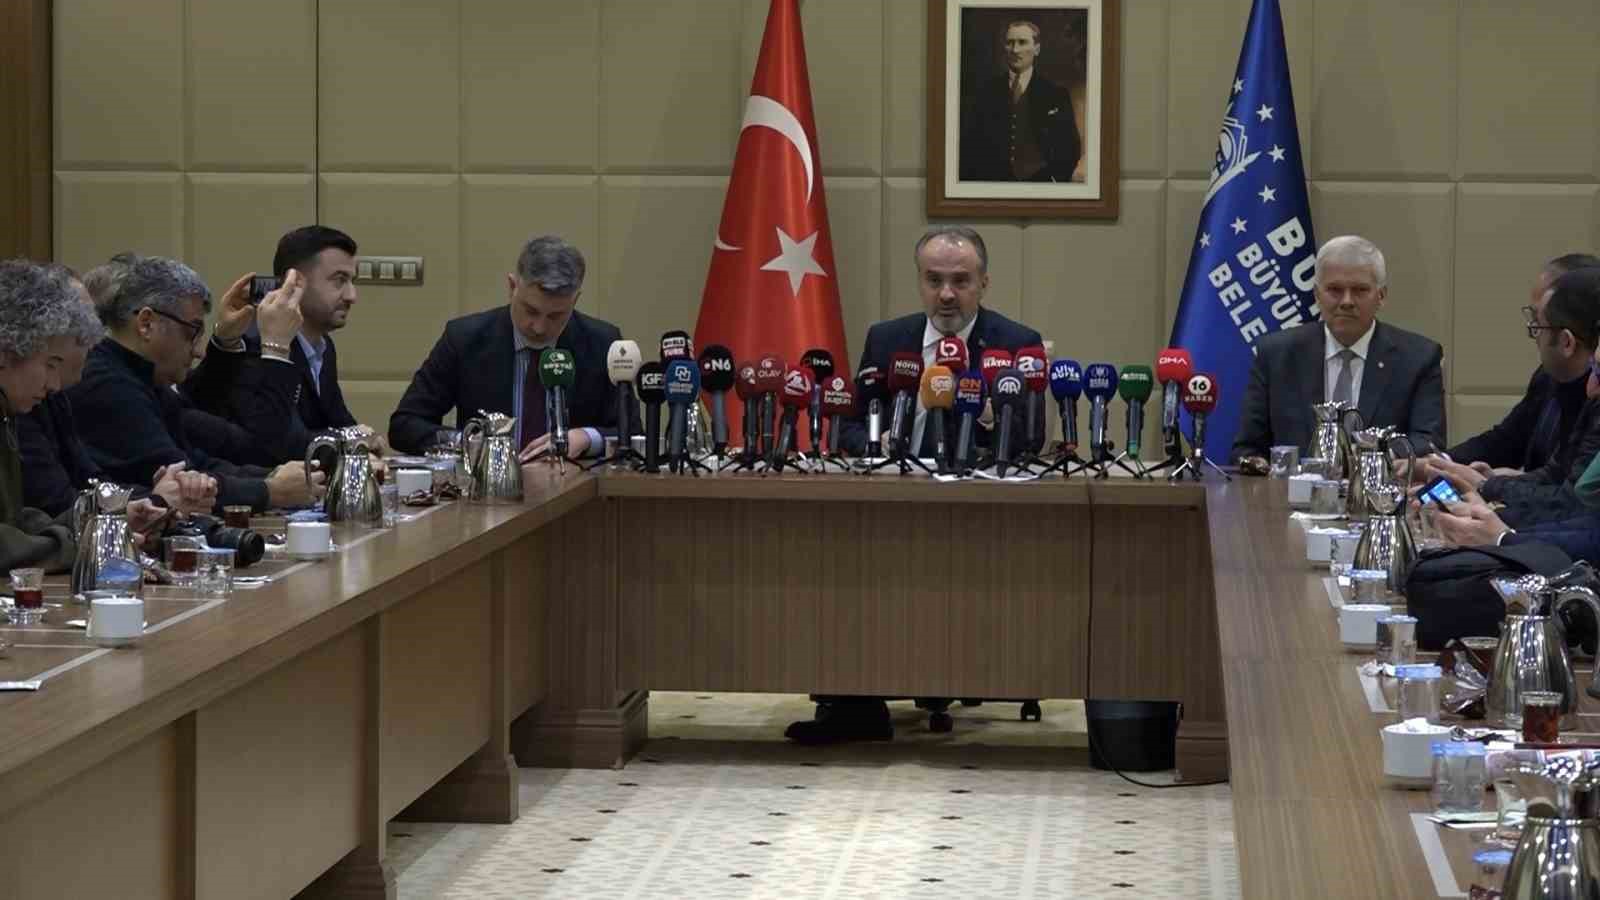 Büyükşehir Belediye Başkanı Aktaş, BUSKİ’deki iddialara ilişkin konuştu